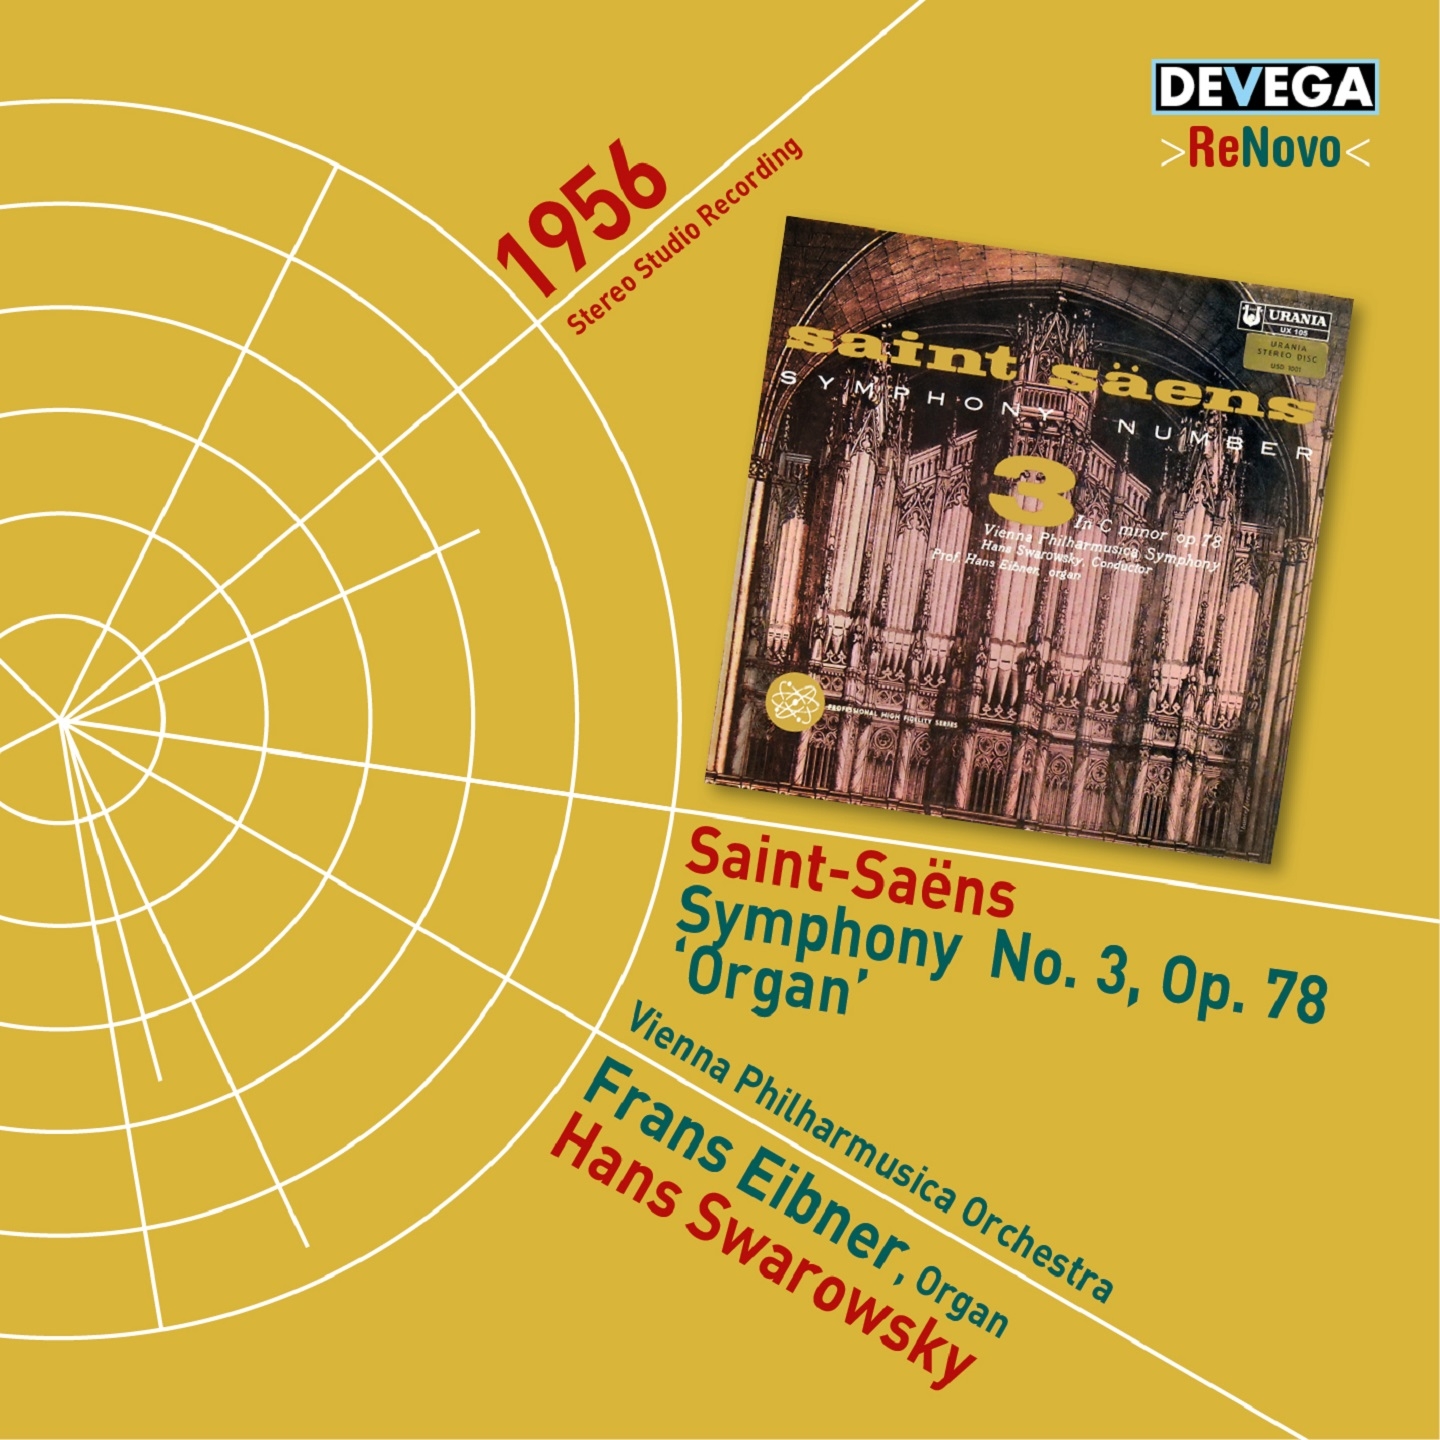 SaintSa ns: Symphony No. 3, Op. 78 " Organ"